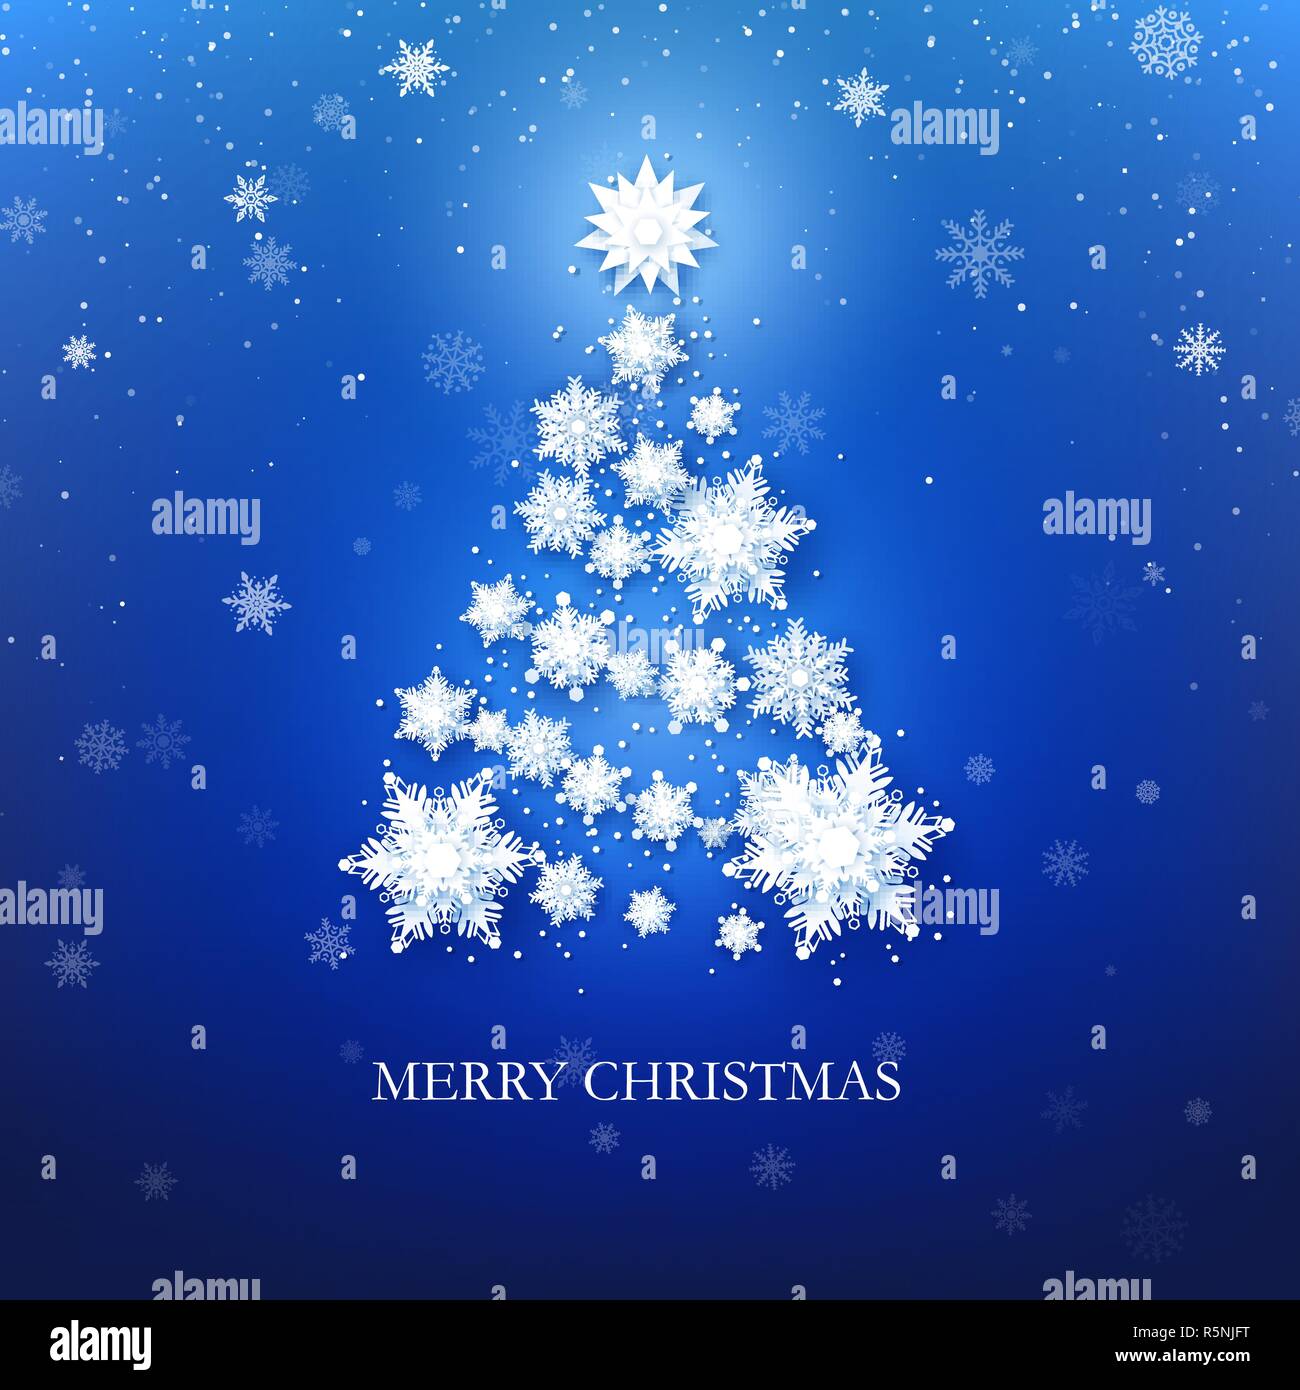 Weiße Schneeflocke Weihnachtsbaum auf blauem Hintergrund. Weihnachten Grußkarte. Vector Illustration Stock Vektor